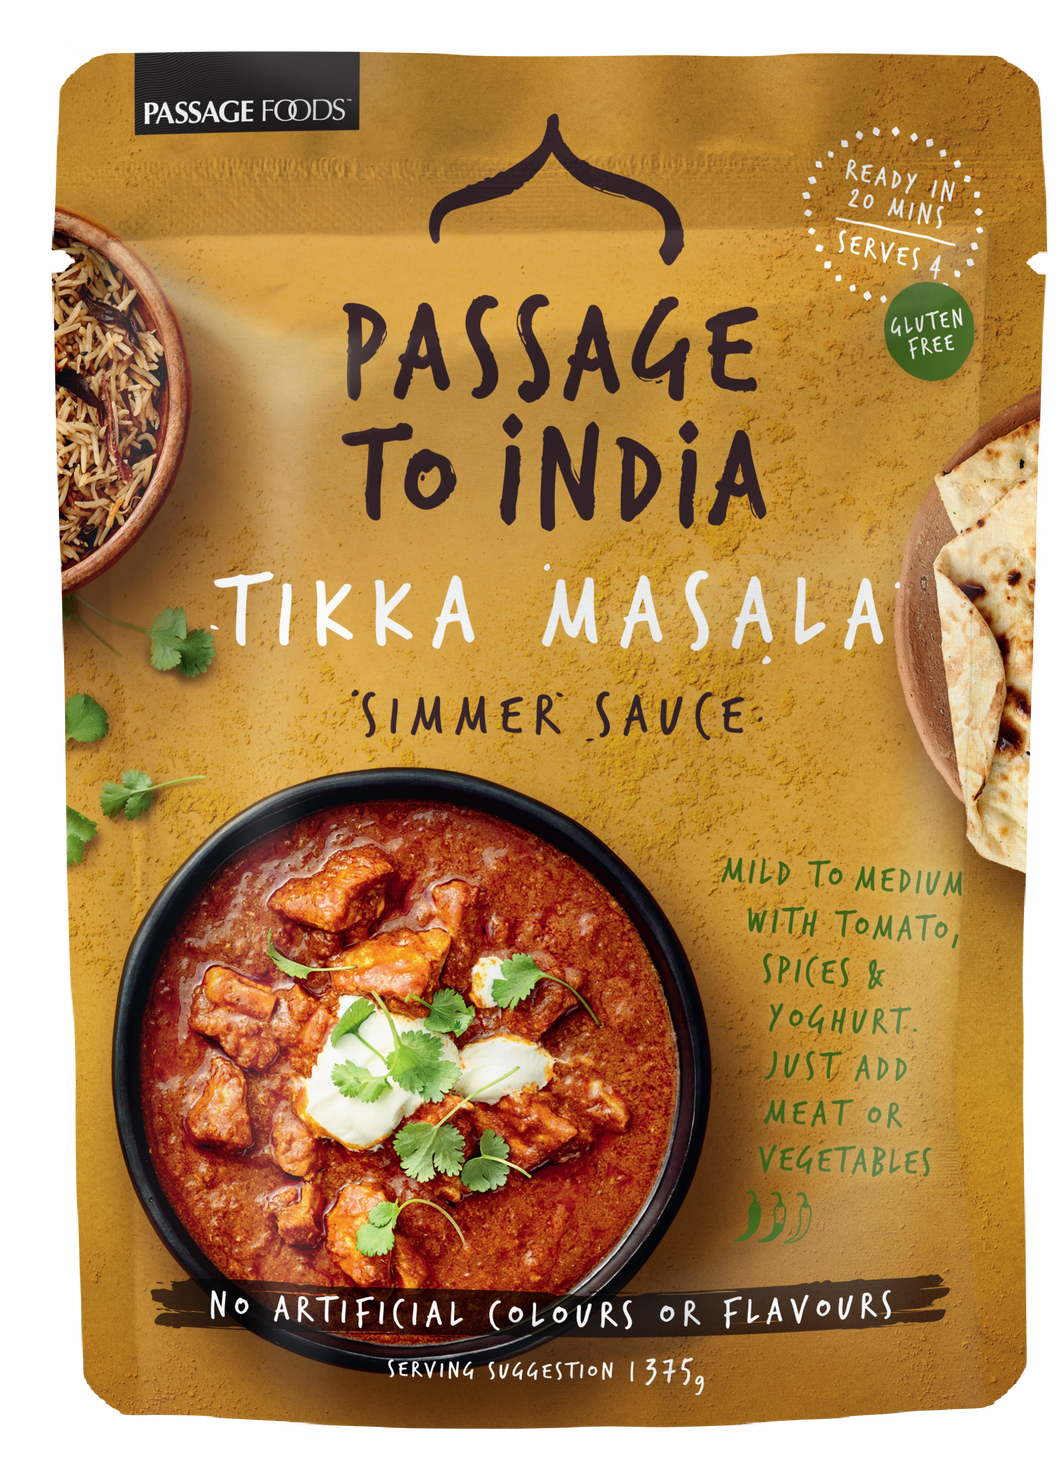 Passage to India - Tikka Masala Simmer Sauce